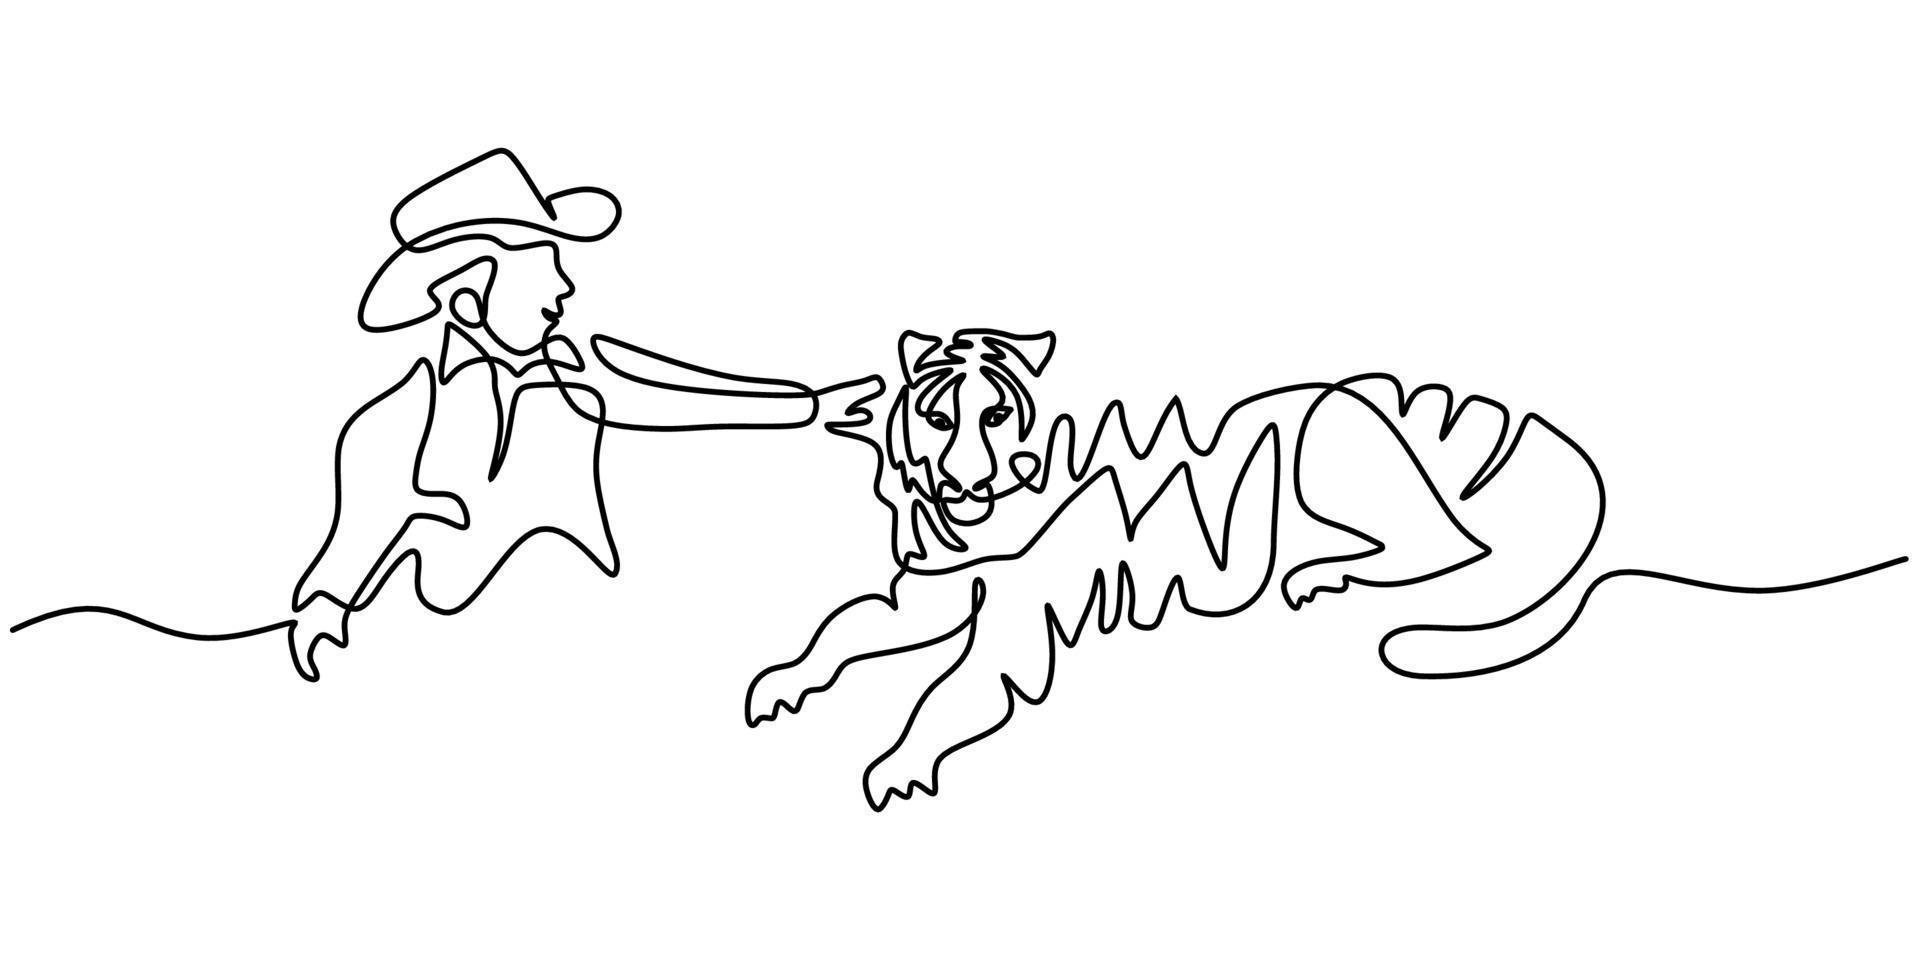 durchgehende einzeilige Zeichnung von Cowboy und großem Tiger vektor